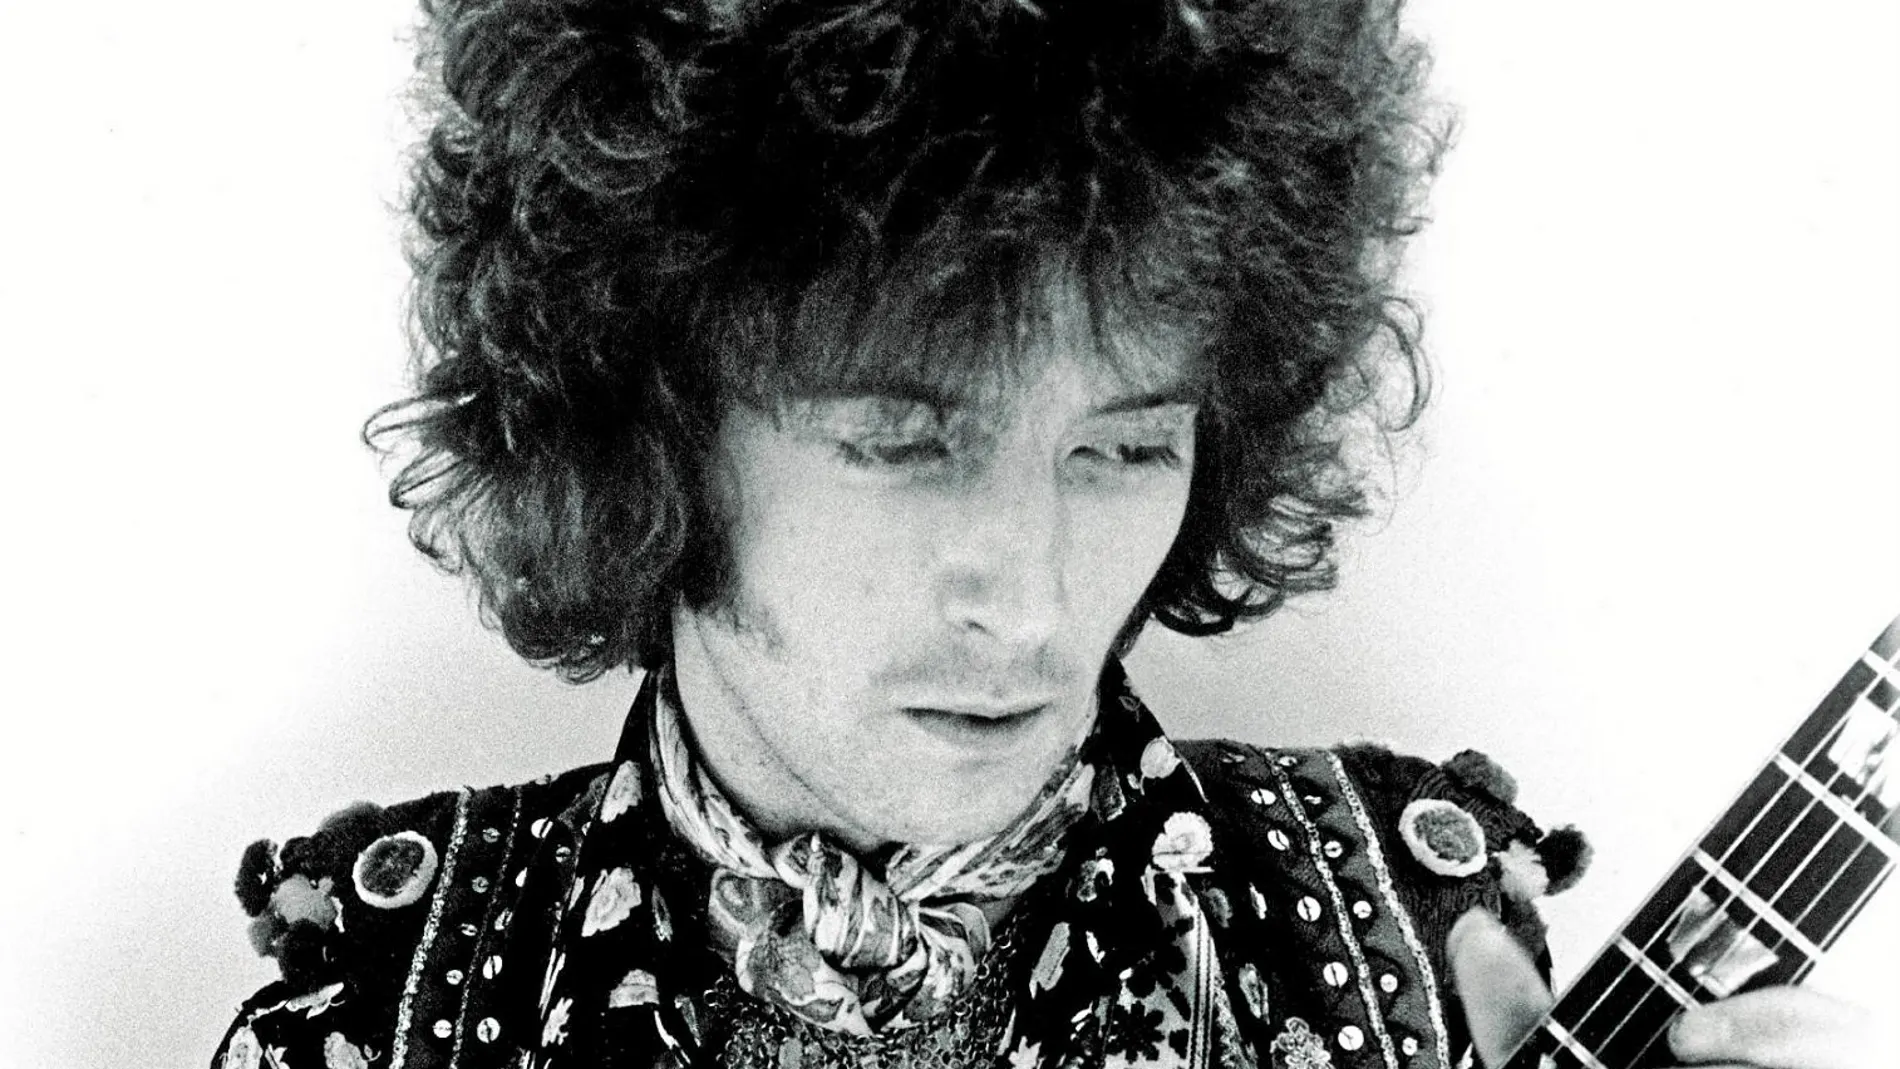 Eric Clapton comenzó a ser reconocido como un gran guitarrista a los 18 años, cuando entró en los Yardbirds